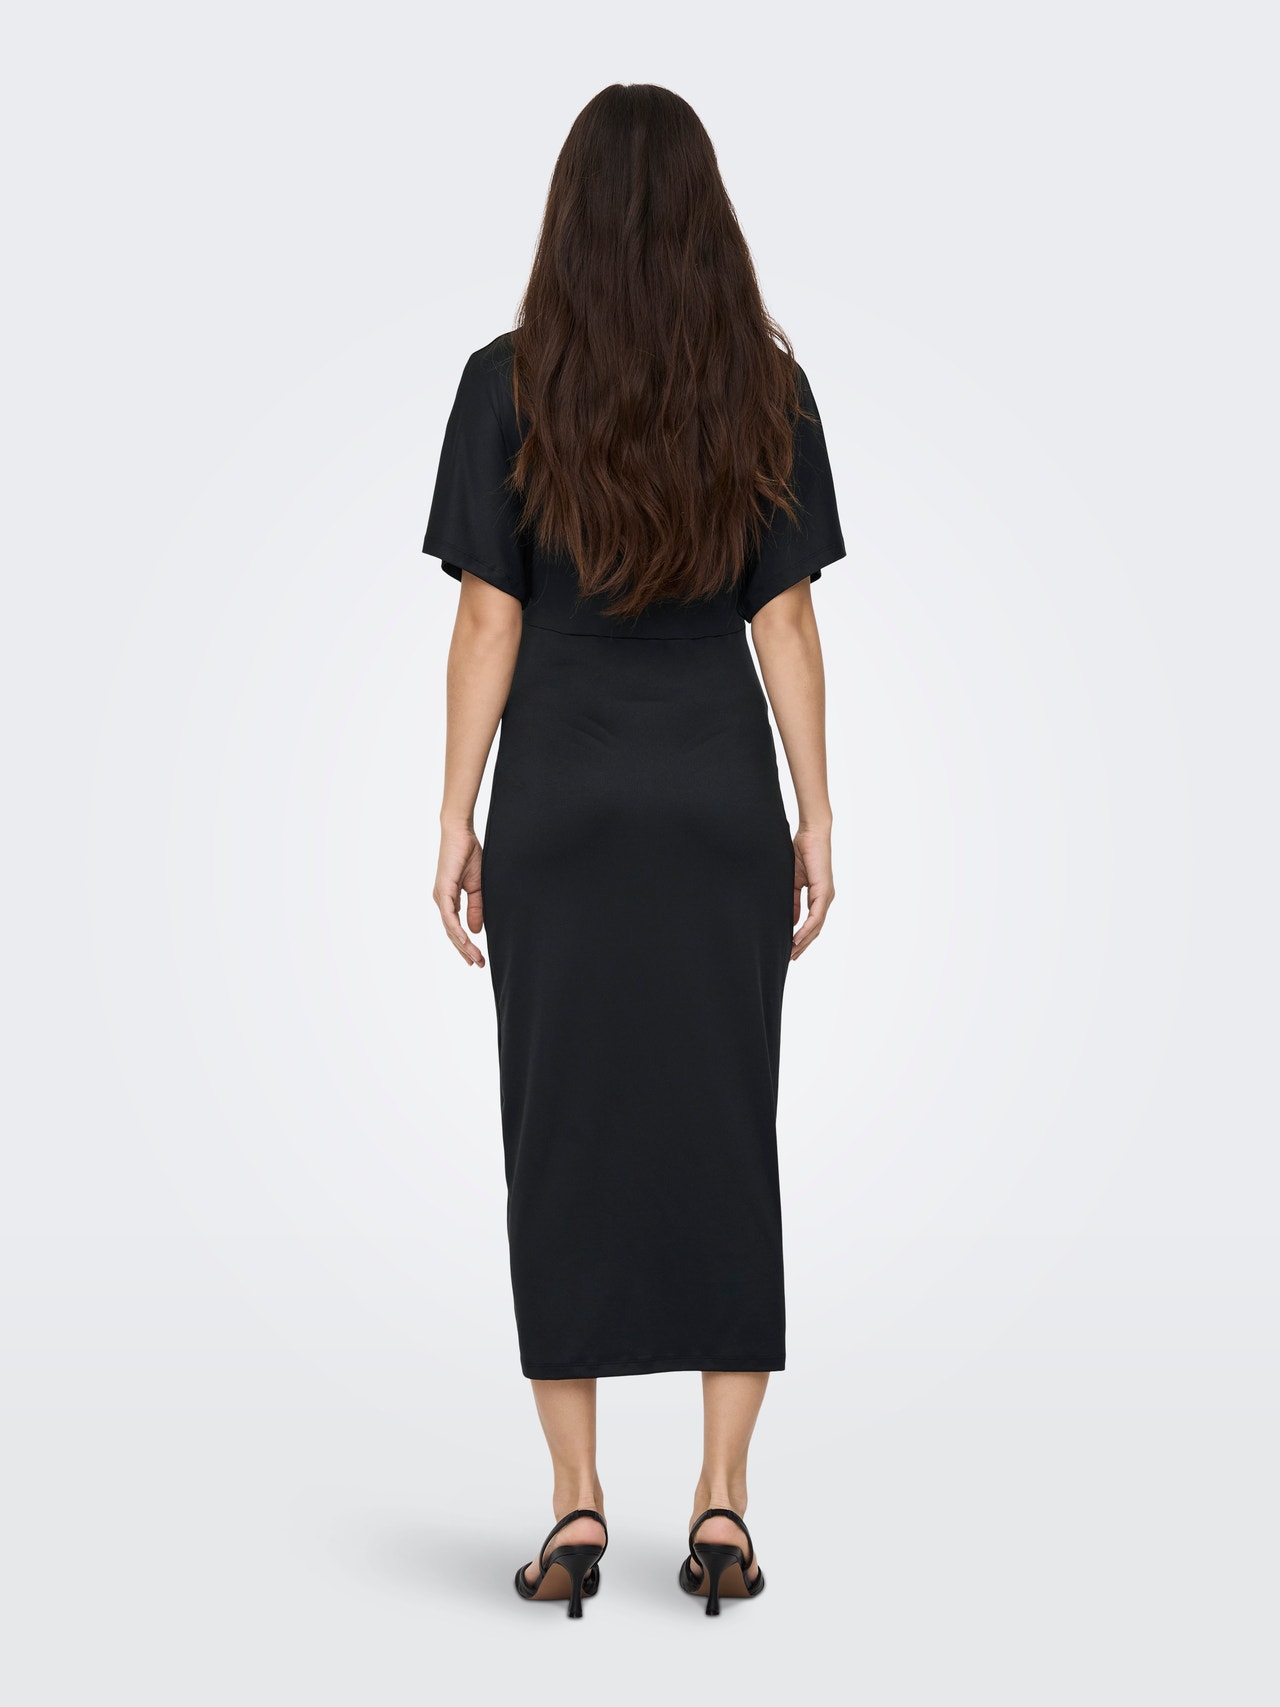 ONLY Normal geschnitten V-Ausschnitt Langes Kleid -Black - 15302095